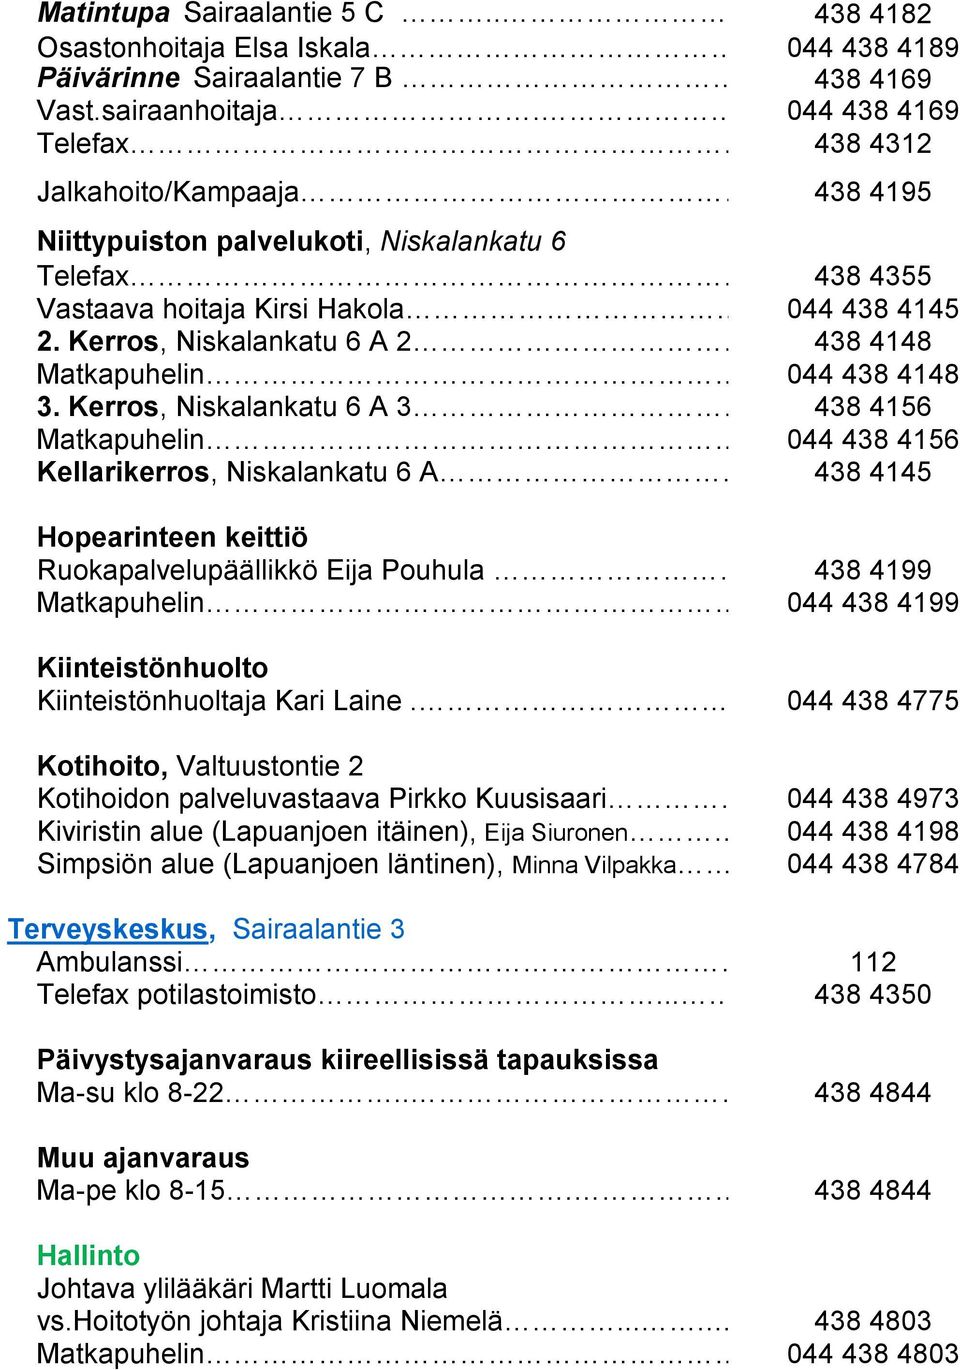 Kerros, Niskalankatu 6 A 3..438 4156 Matkapuhelin... 044 438 4156 Kellarikerros, Niskalankatu 6 A.438 4145 Hopearinteen keittiö Ruokapalvelupäällikkö Eija Pouhula... 438 4199 Matkapuhelin.